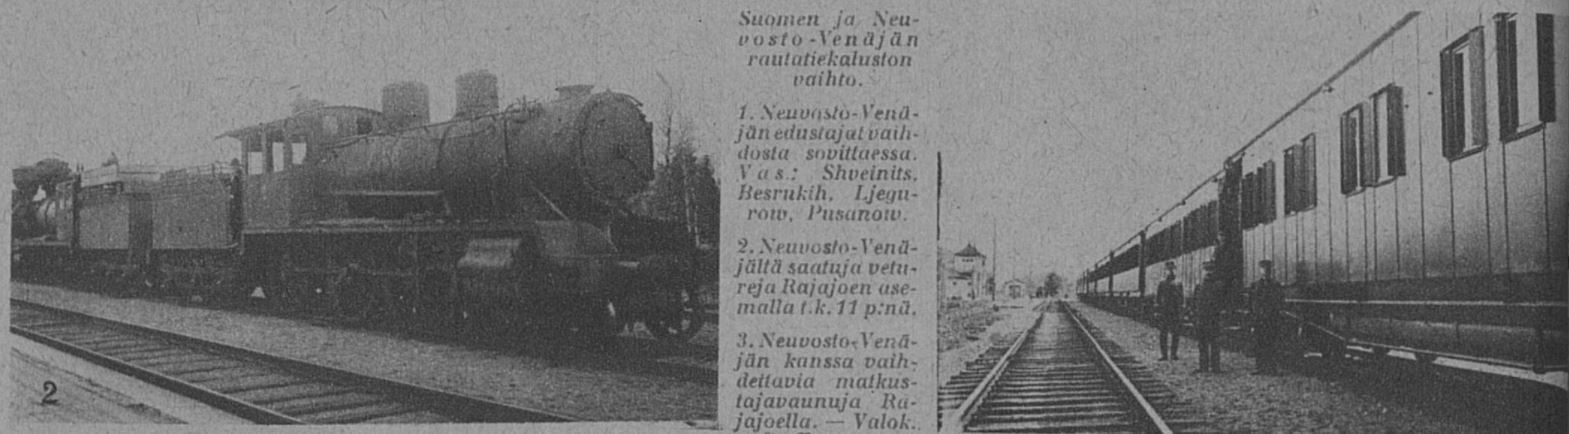 suomen-kuvalehti-1923-21-2.JPG